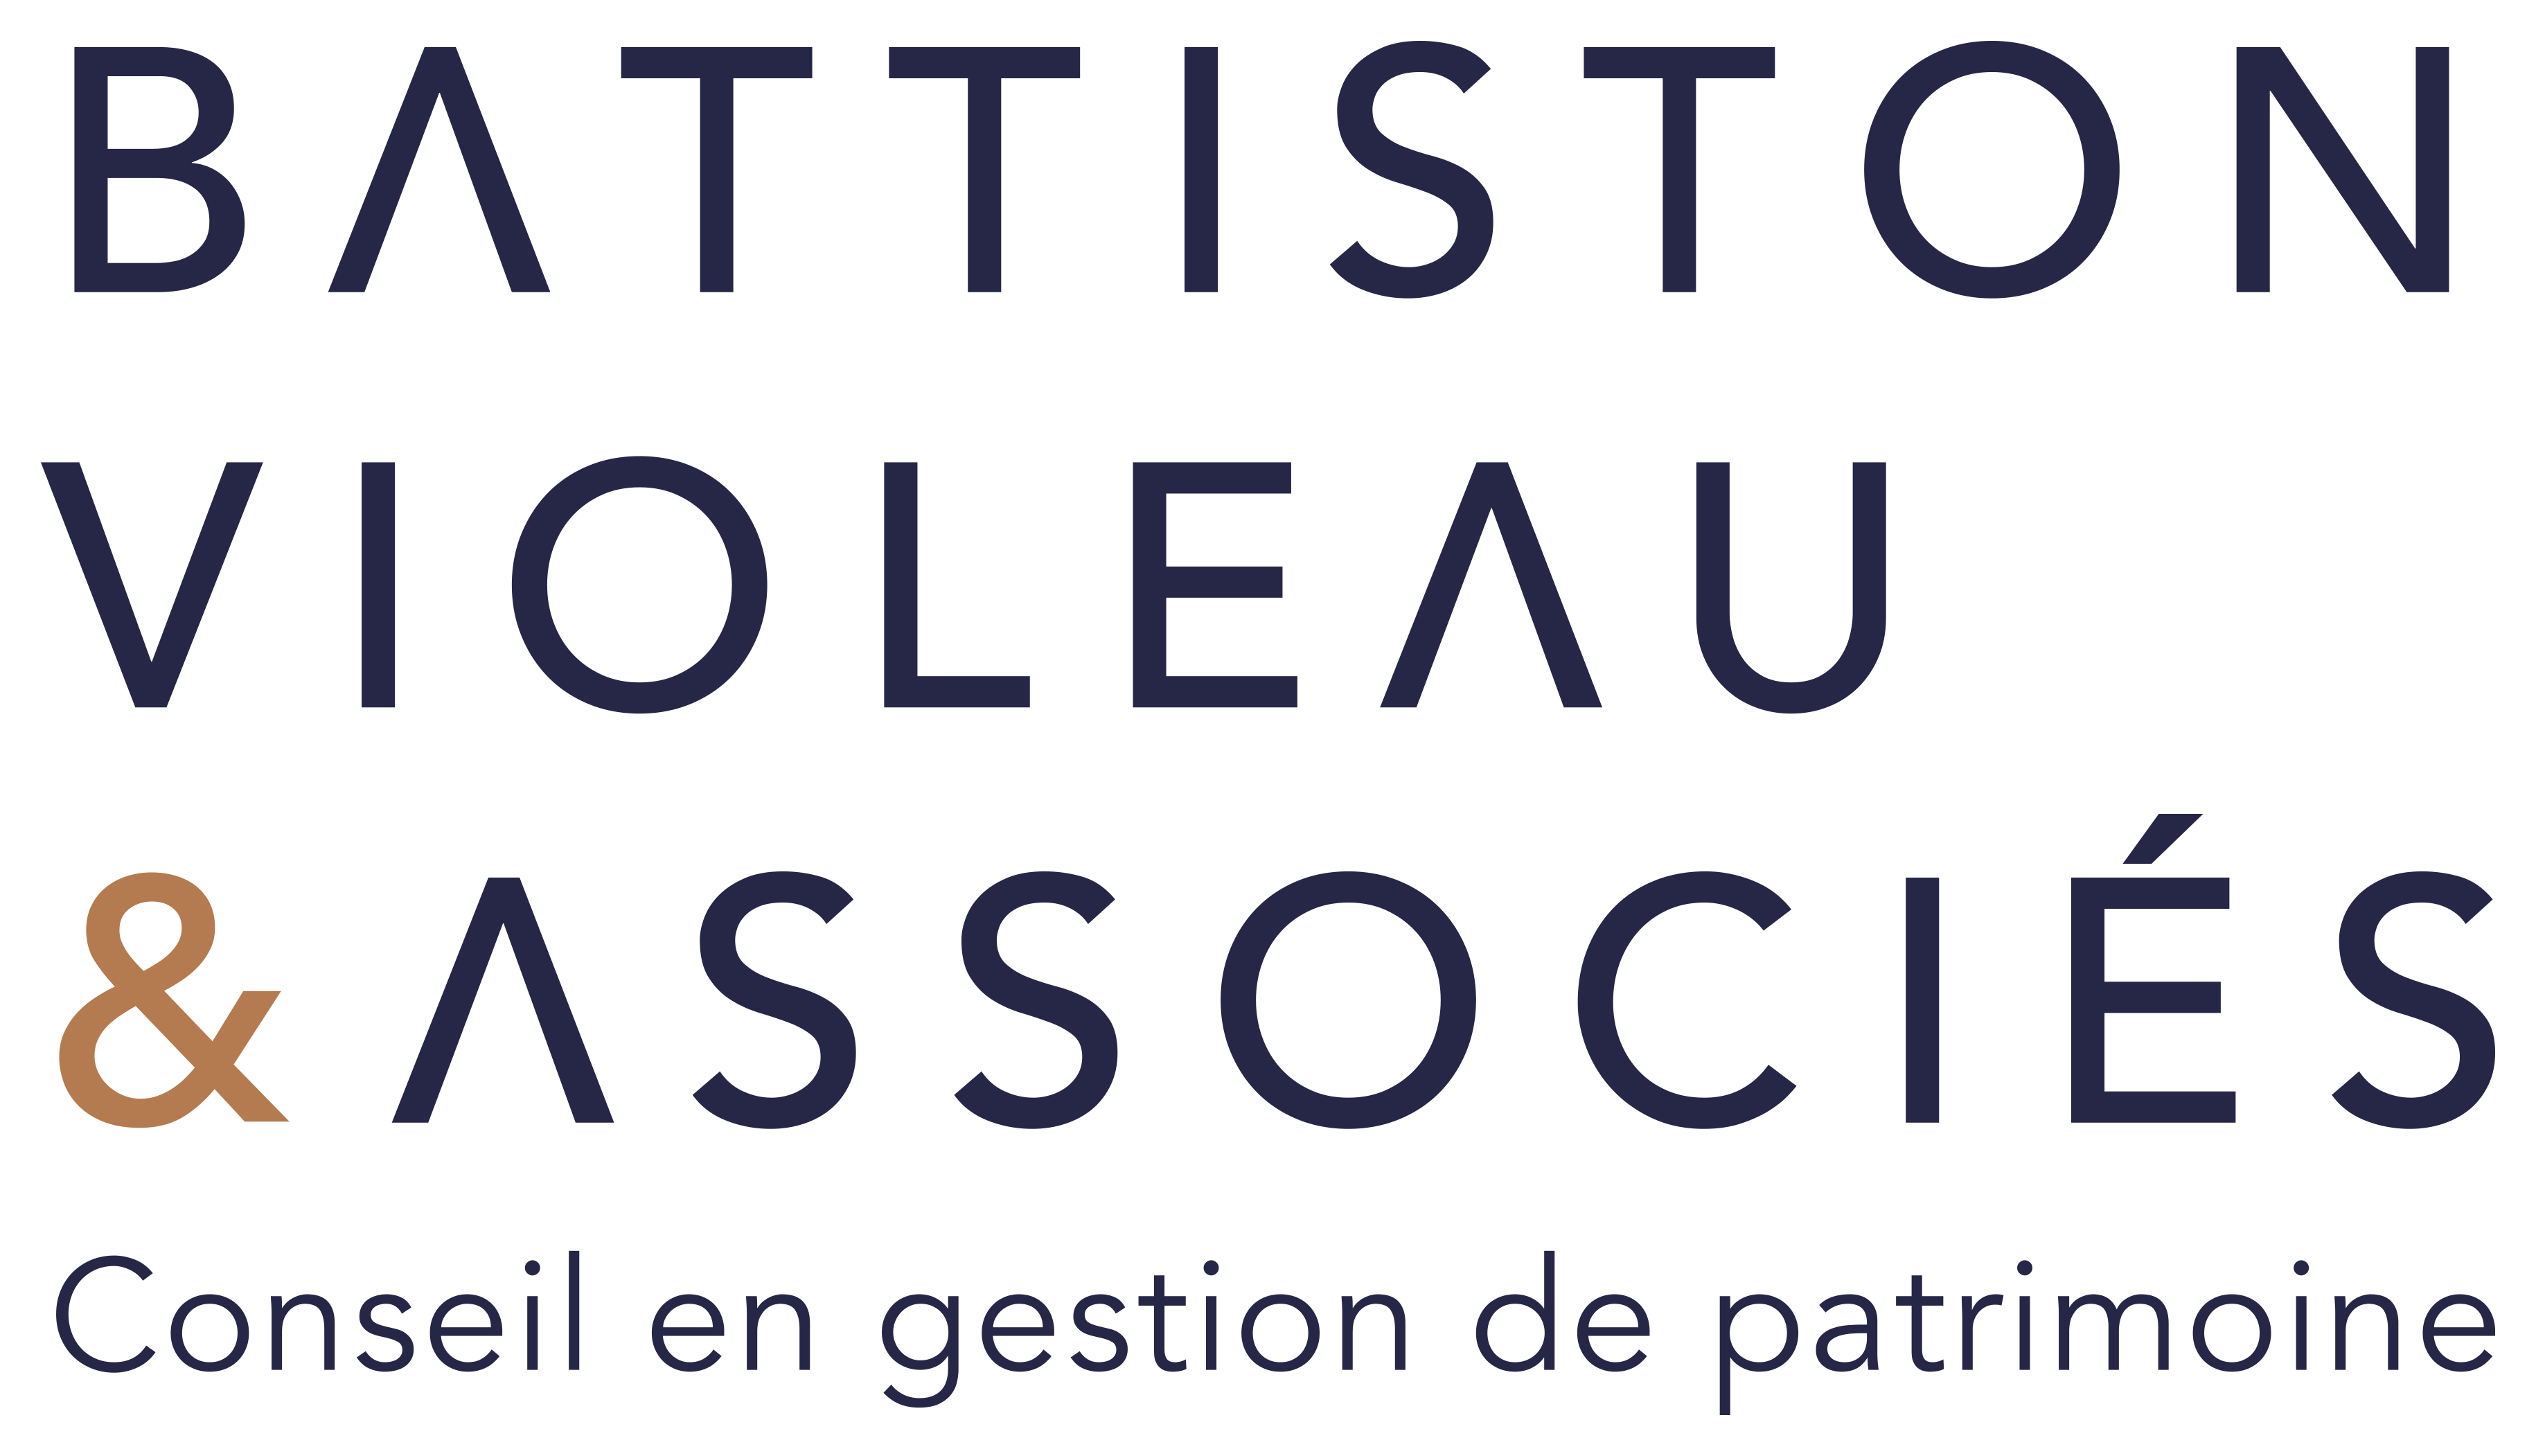 Battiston Violeau & Associés